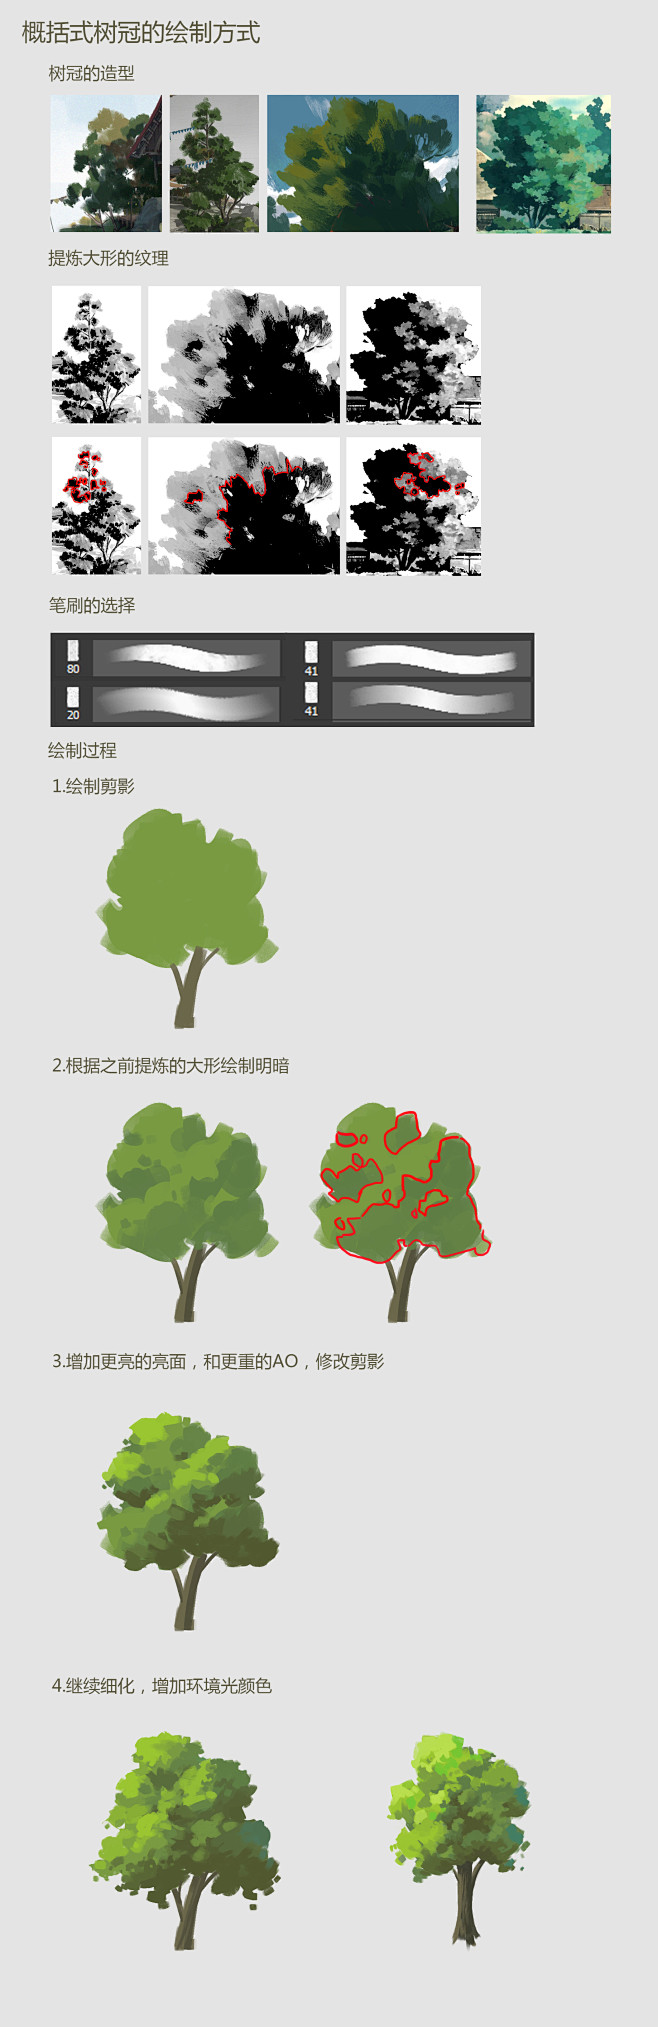 概括式树冠的绘制技巧